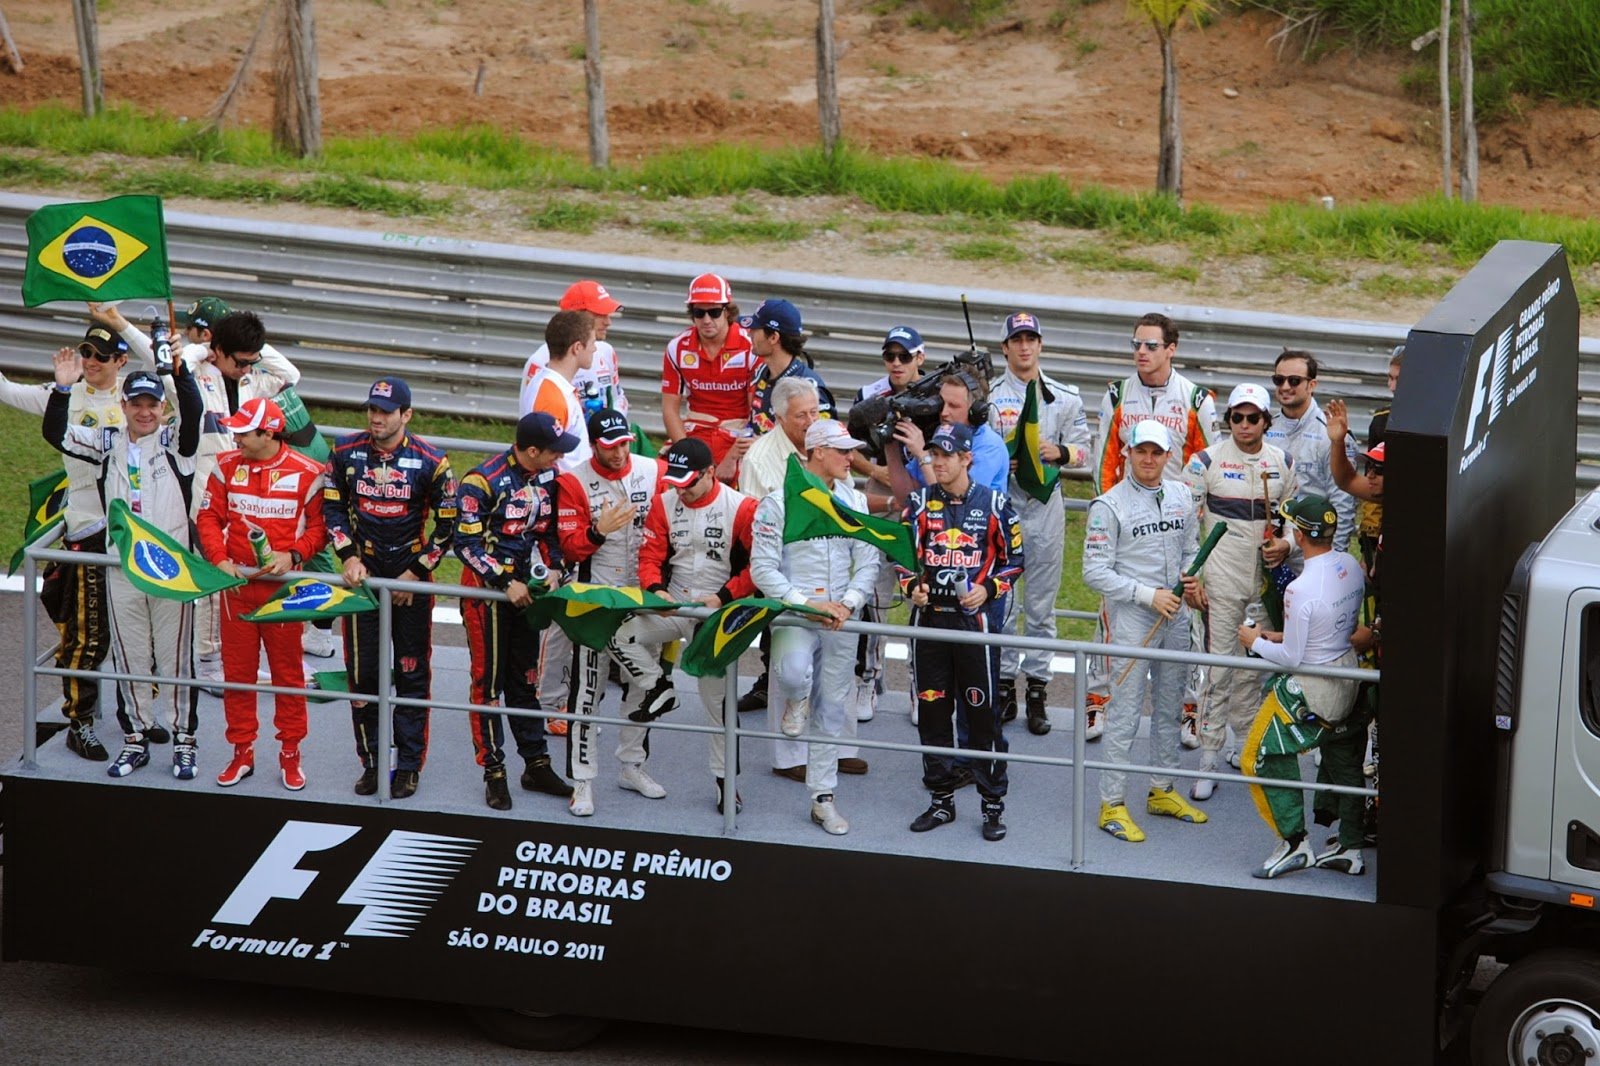 Foto de GP do Brasil de F1 sinceramente está difícil – Dia 188 dos 365 dias mais importantes da história do automobilismo – Segunda Temporada.